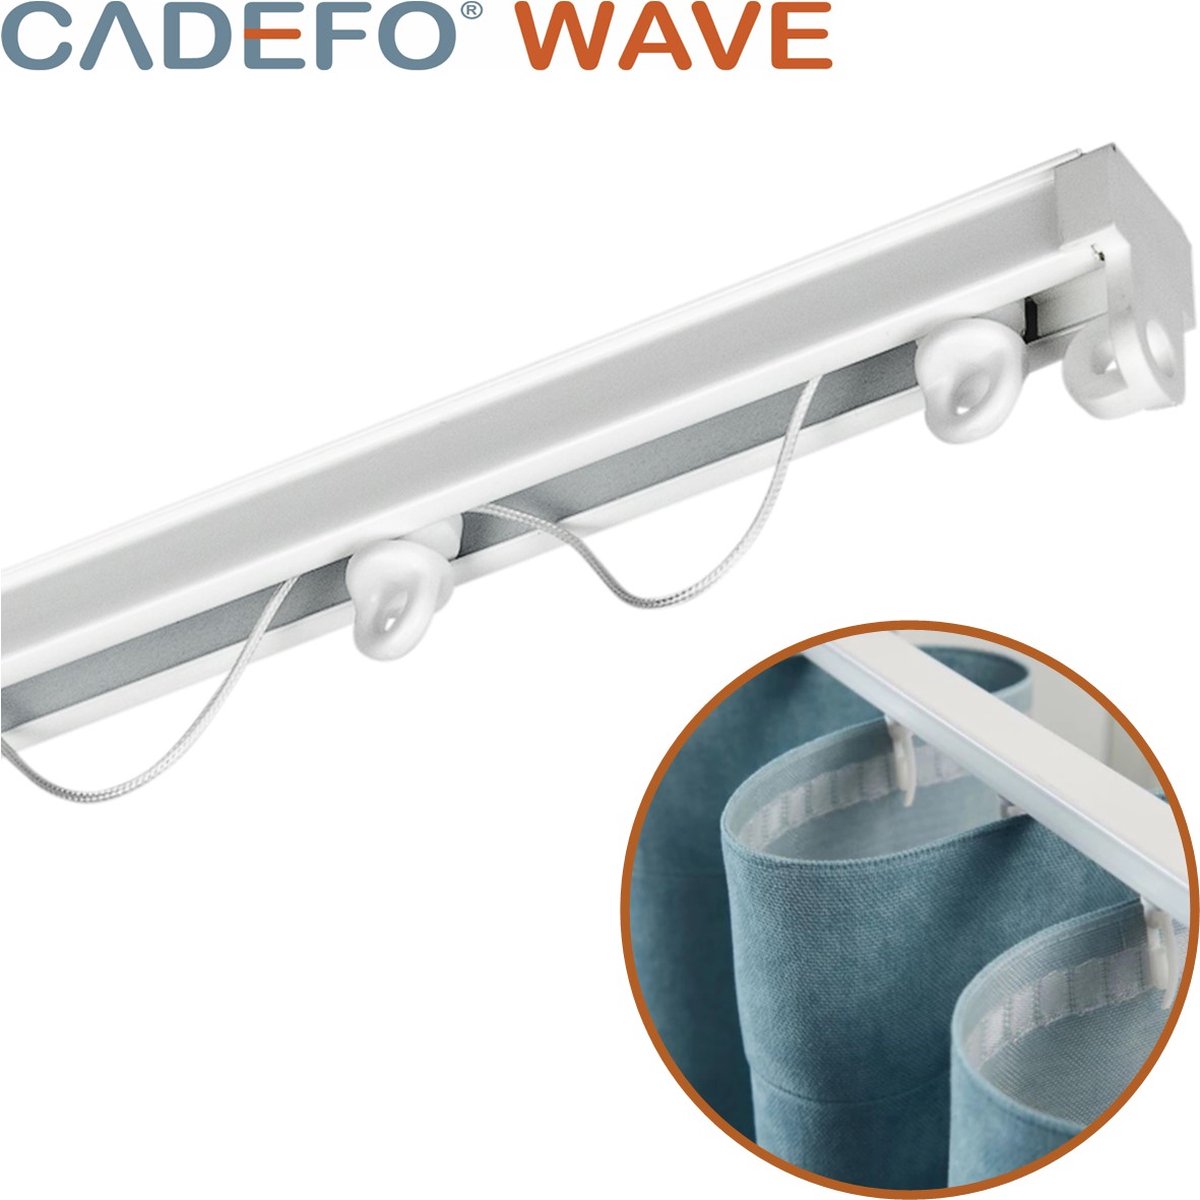 CADEFO WAVE (501 - 550 cm) Gordijnrails - Compleet op maat! - UIT 1 STUK - Leverbaar tot 6 meter - Plafondbevestiging - Lengte 502 cm